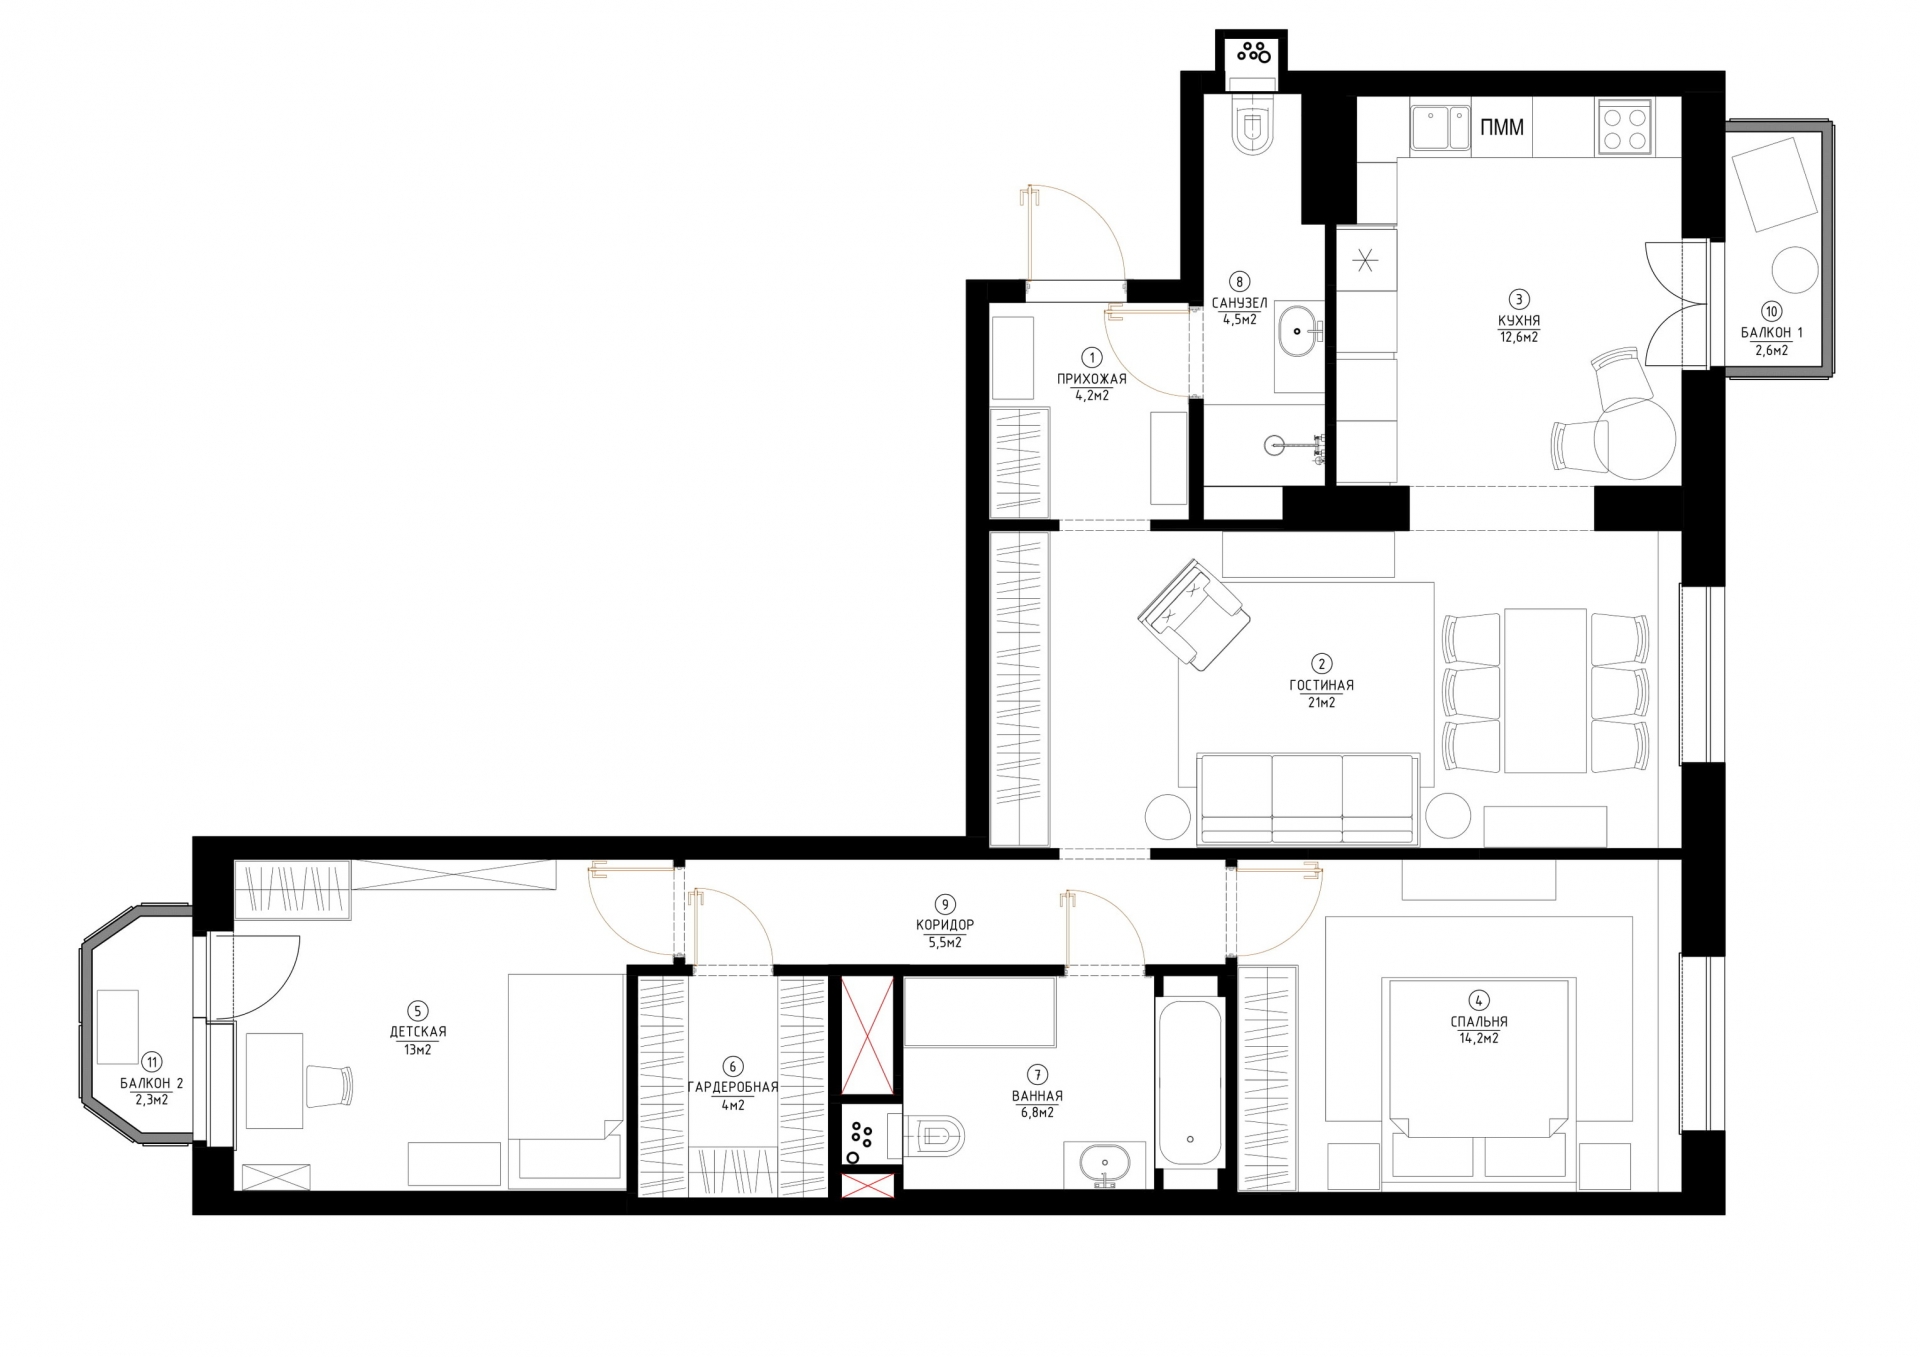 Sơ đồ thiết kế căn hộ diện tích 90m² do nhà thiết kế nội thất Marina Novikova cung cấp.